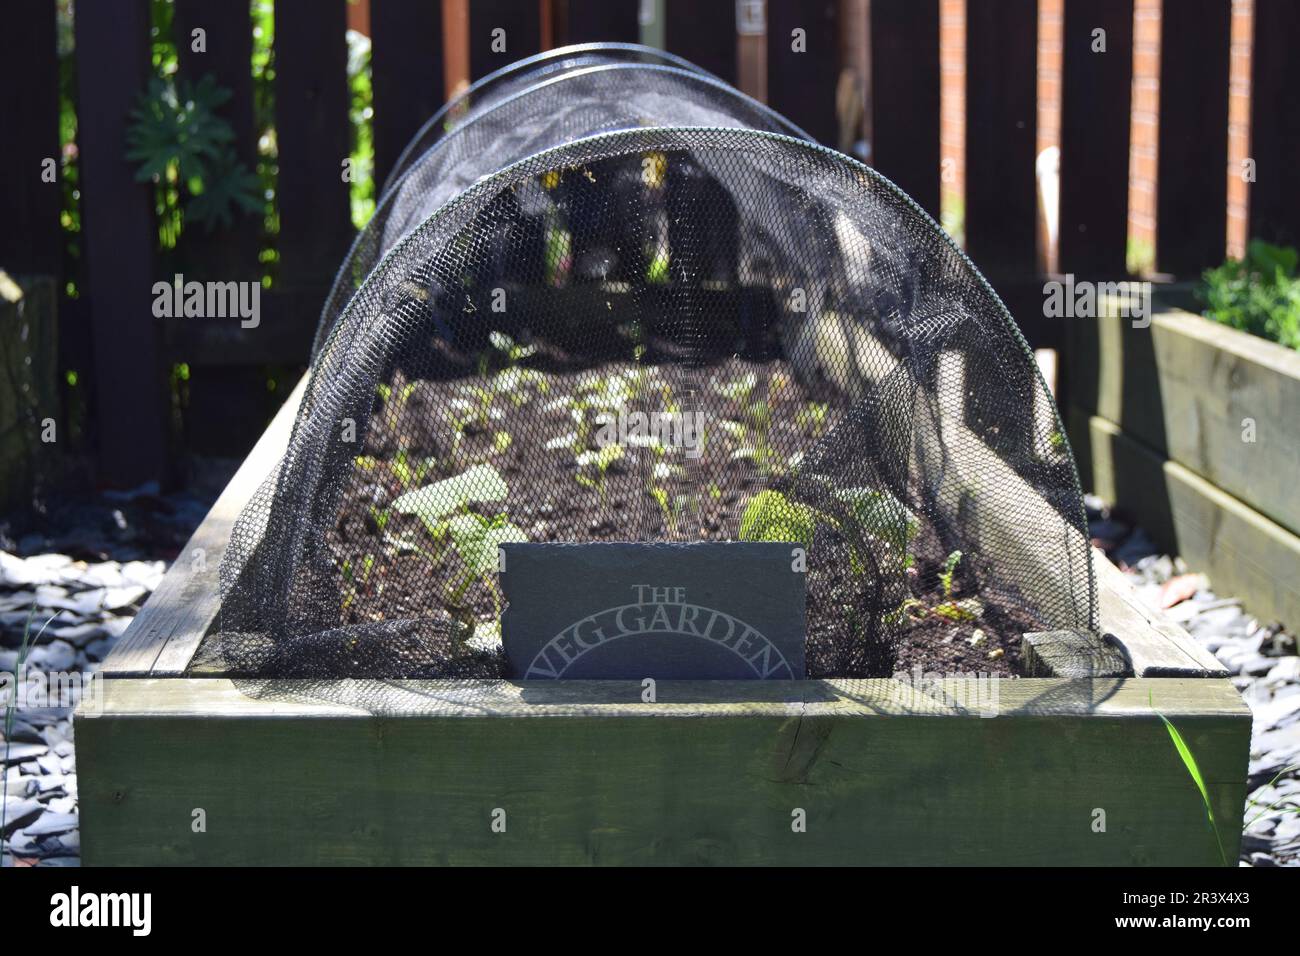 Un lit de légumes rehaussé rempli de semis plantés au printemps, recouvert d'un tunnel de croissance net avec une plaque en ardoise « The Veg Garden ». Banque D'Images